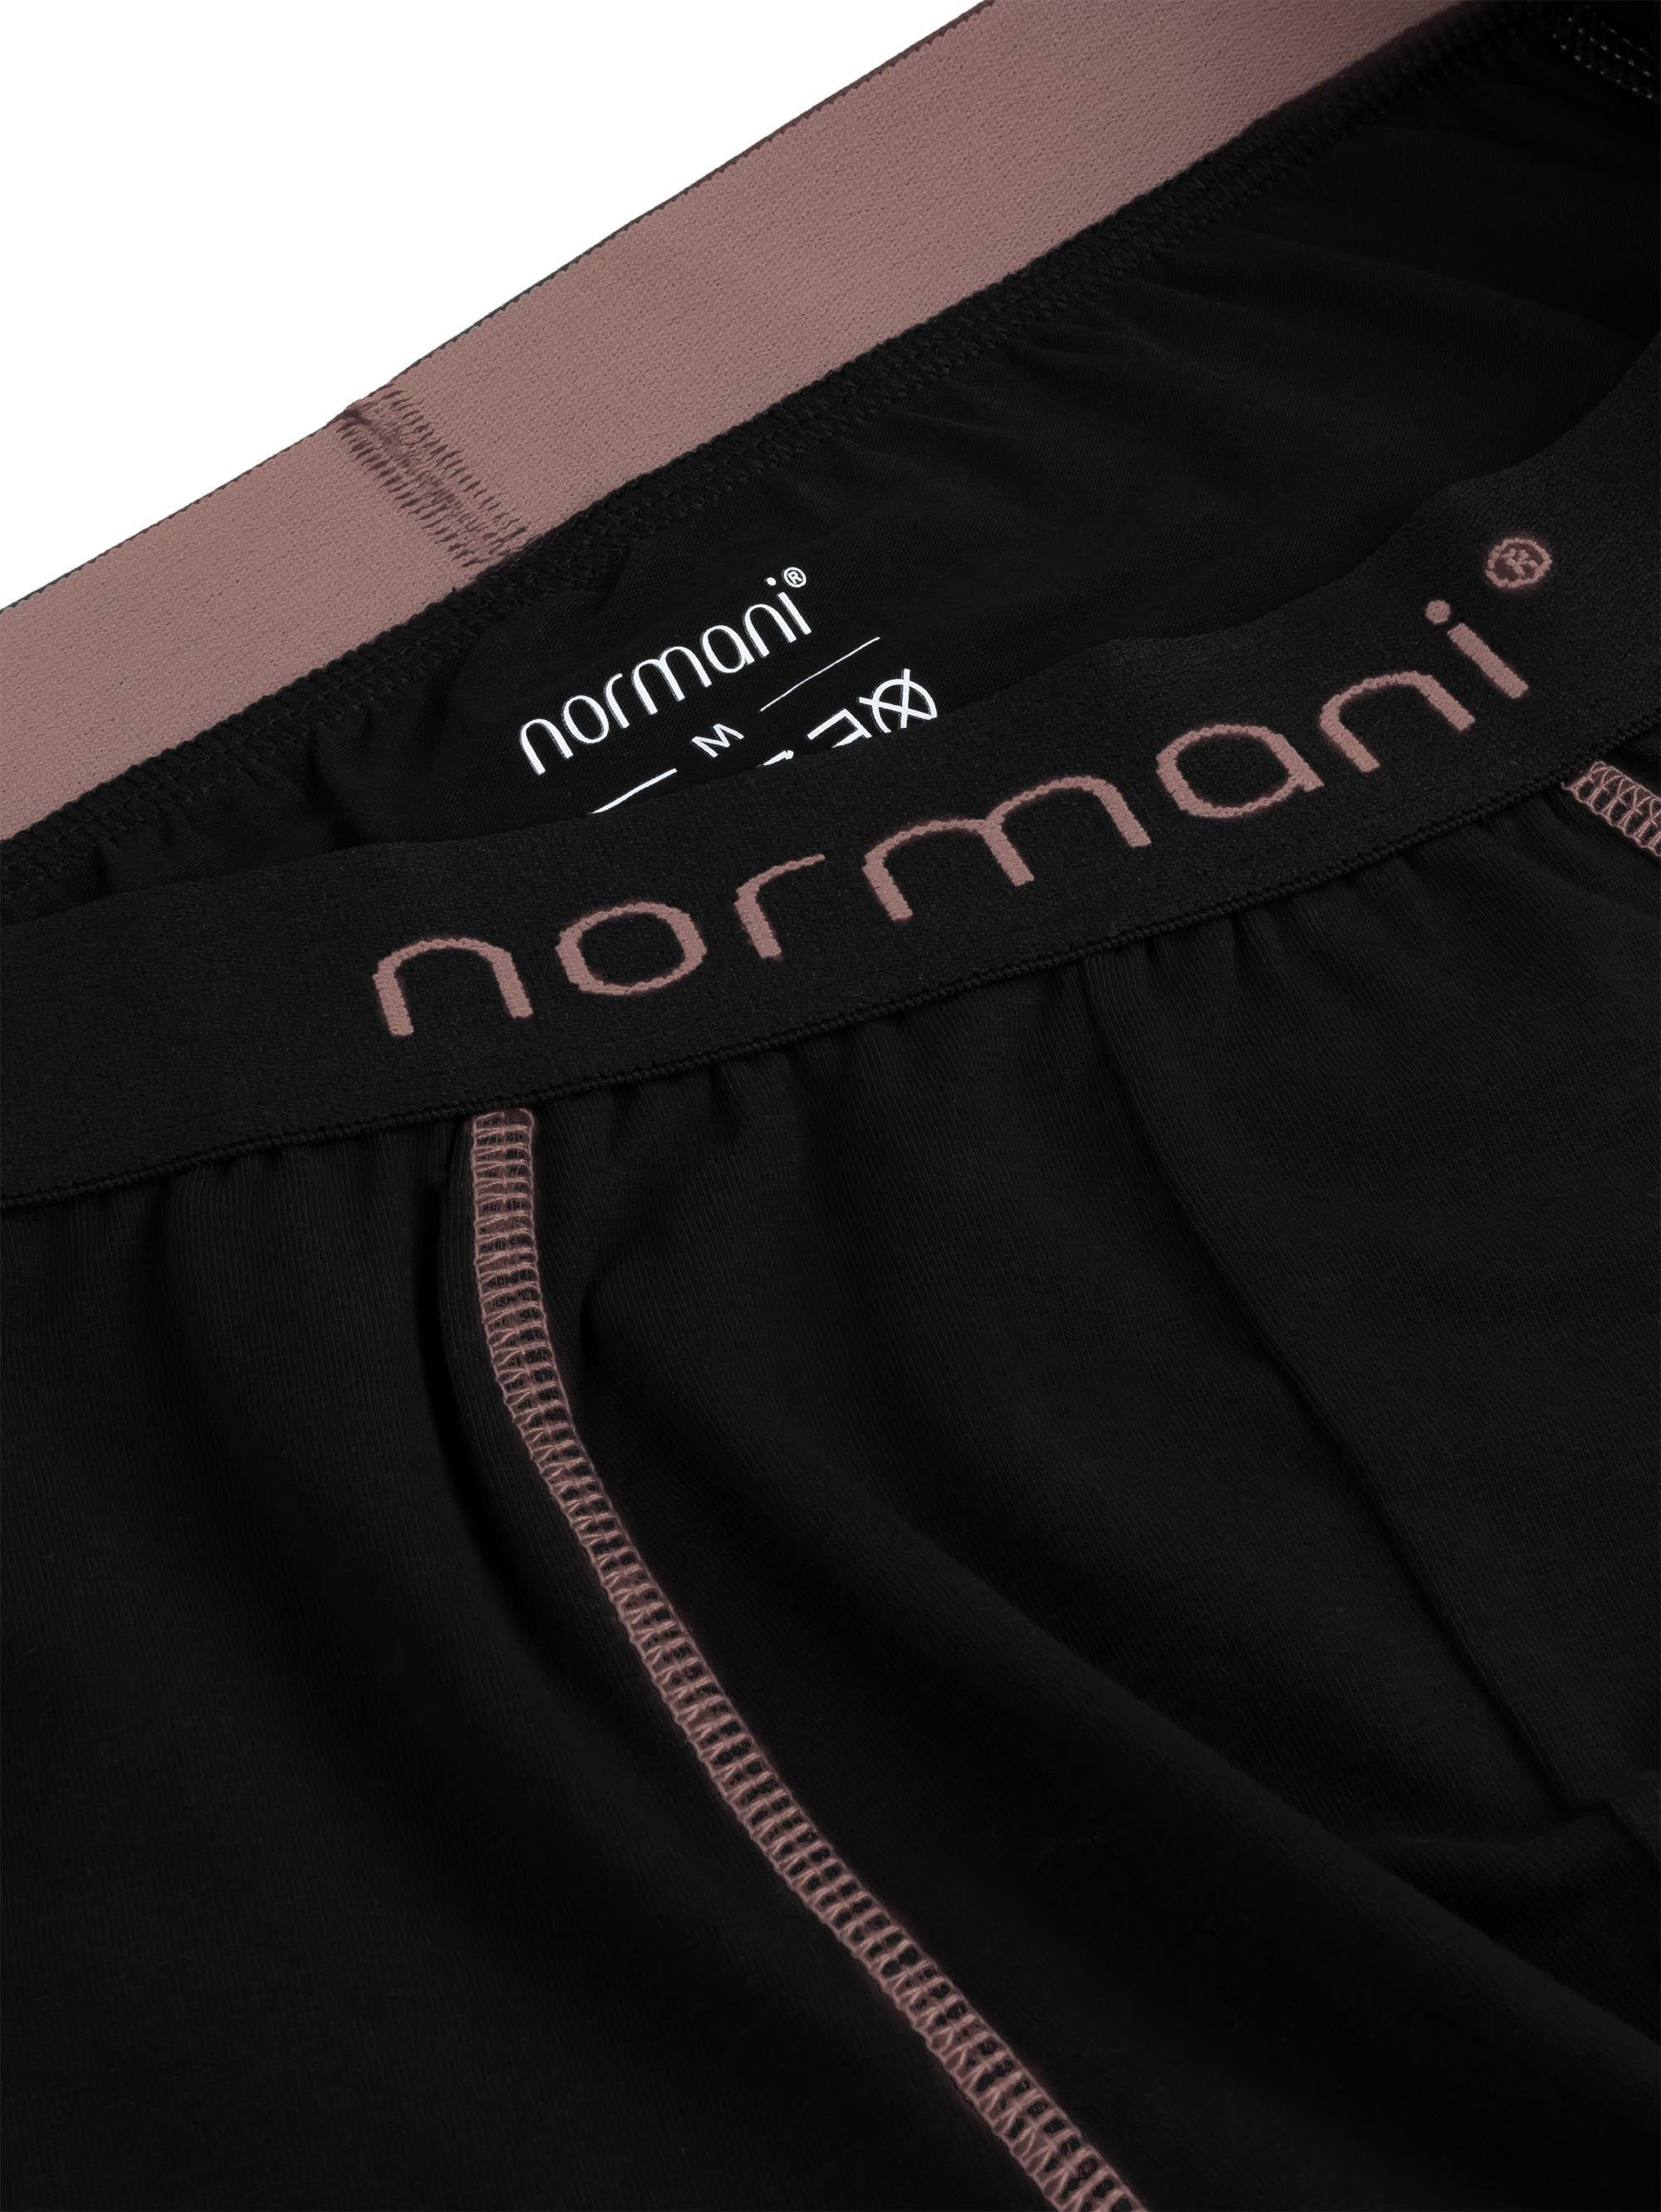 Boxershorts Herren Baumwoll-Boxershorts Unterhose 6 Lachs Baumwolle für normani aus Männer atmungsaktiver